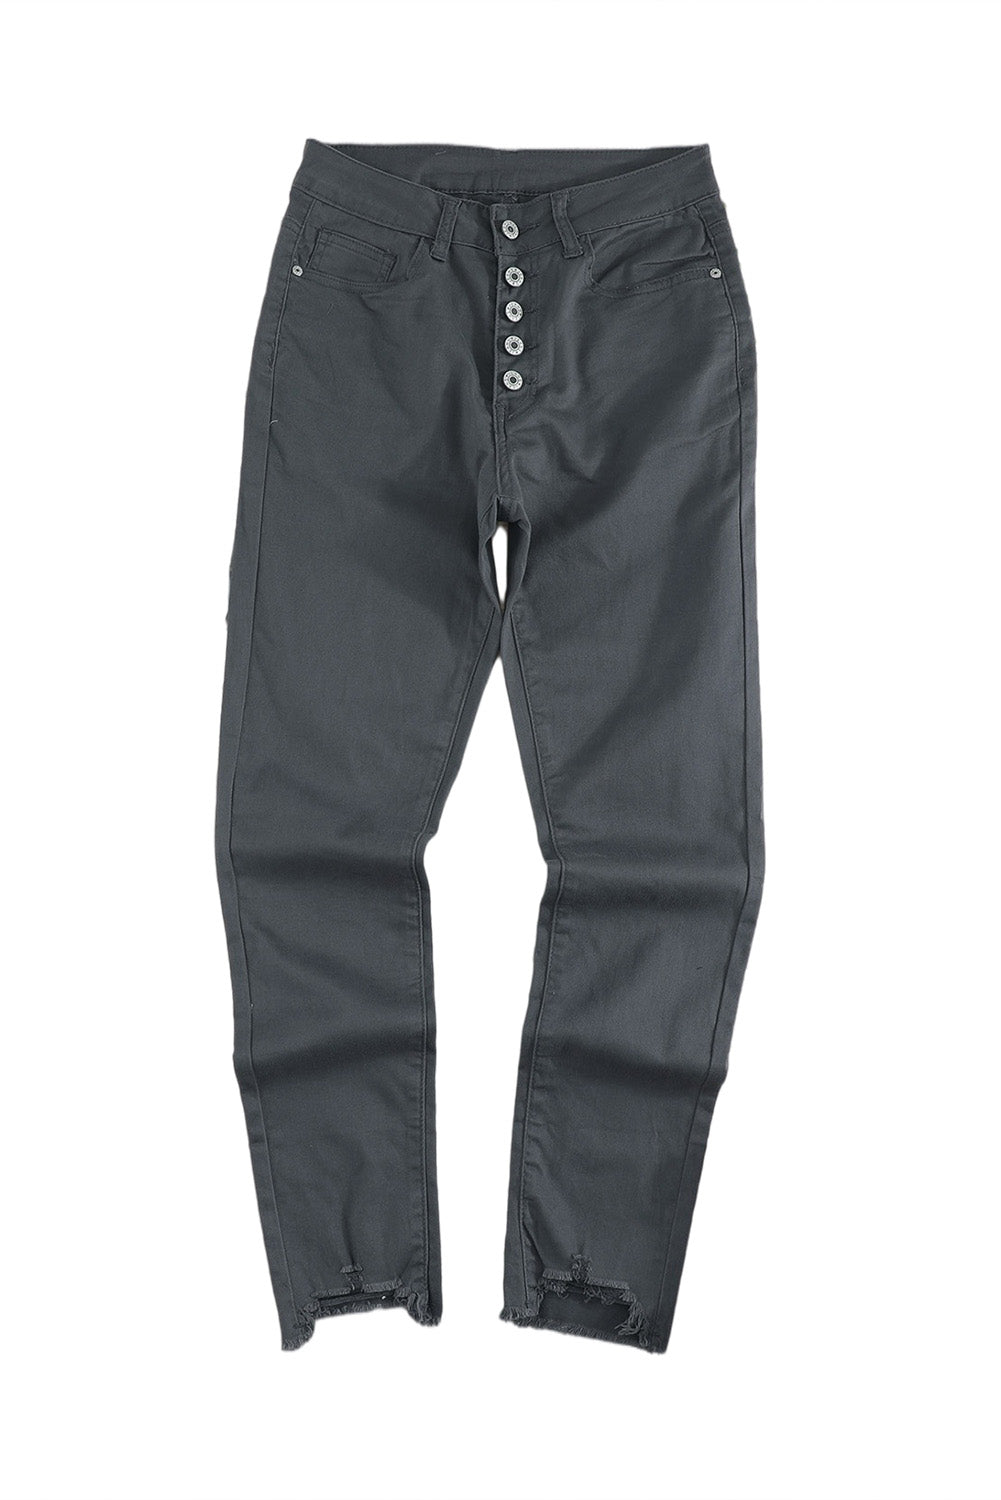 Graue, schlichte Jeans mit hoher Taille und ausgefransten, verkürzten Jeans